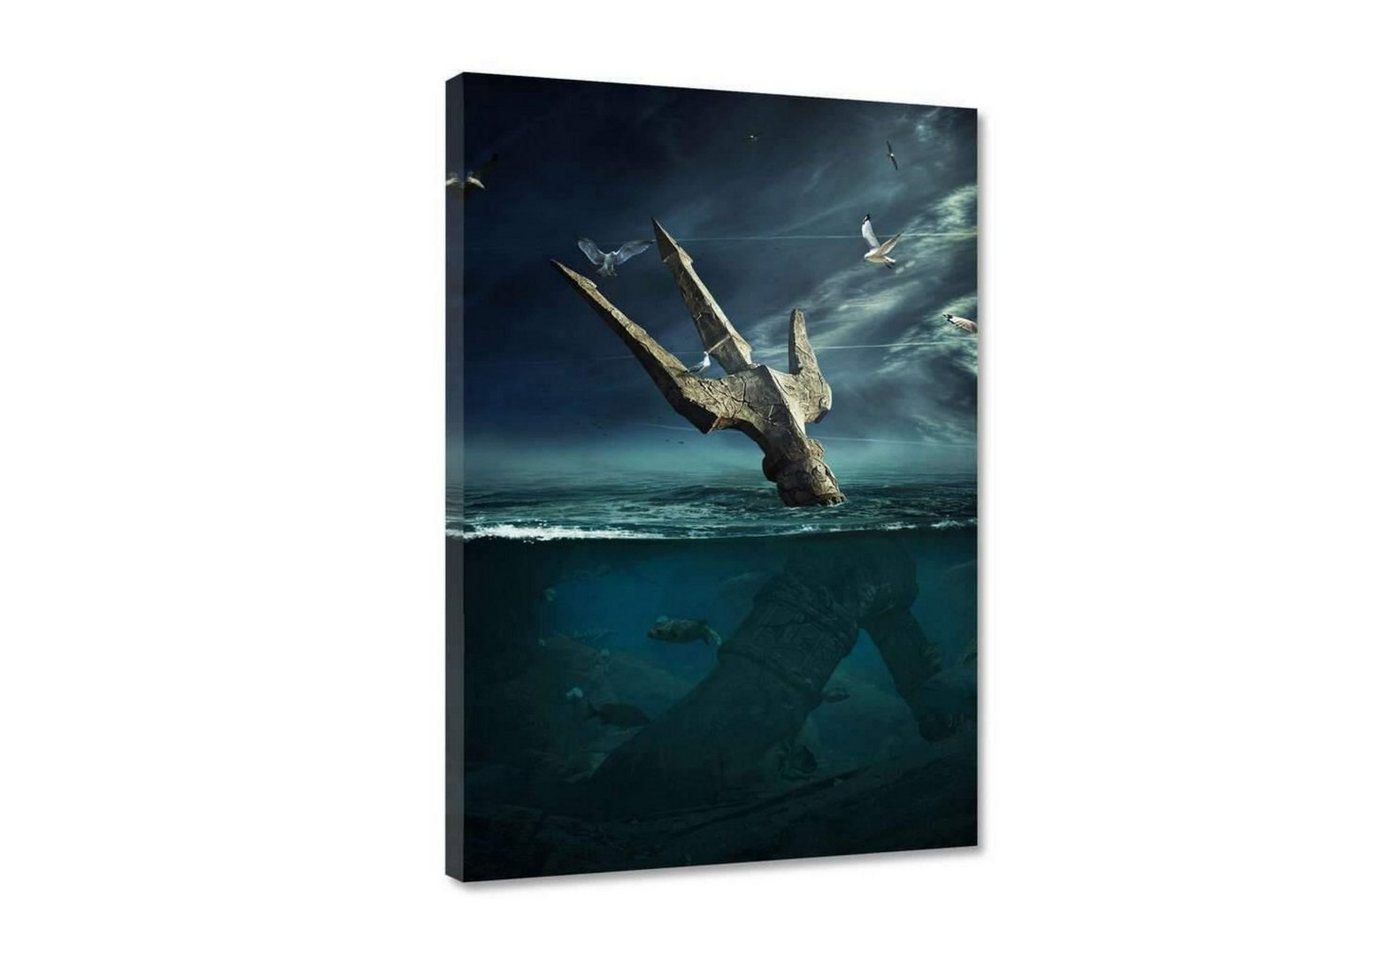 Hustling Sharks Leinwandbild Premium Kunstdruck als XXL Leinwandbild Last Hope Poseidon", in 7 unterschiedlichen Größen verfügbar" von Hustling Sharks